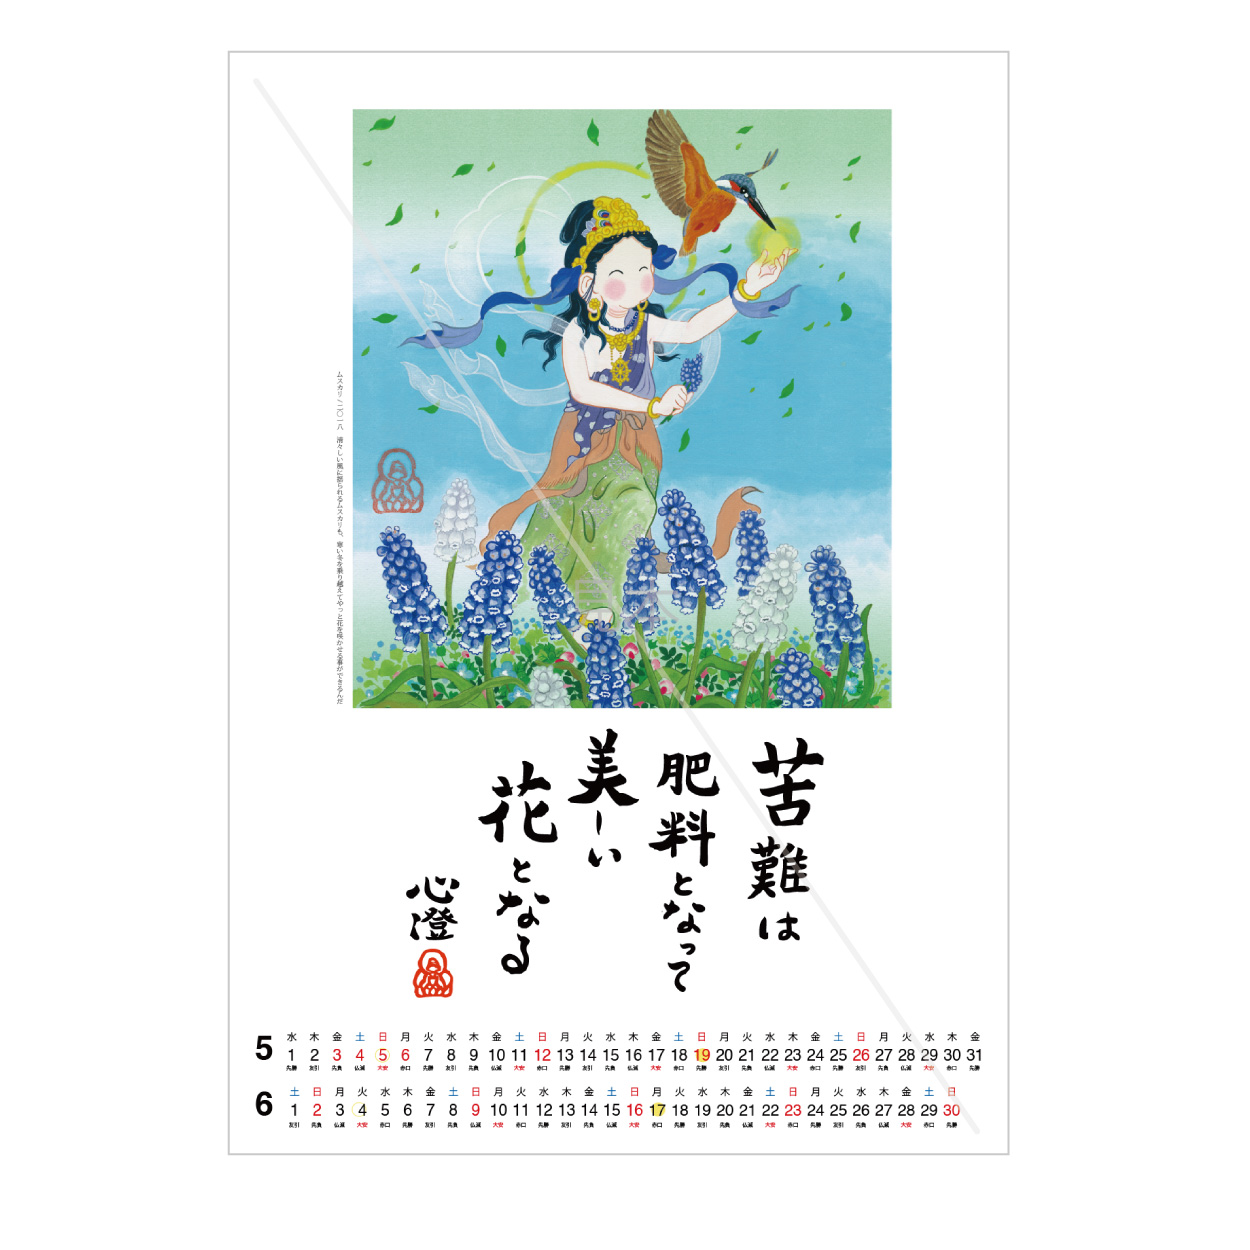 【新年号シール付き】めくったカレンダーを額装して飾ろう♪ 尼僧仏画師・清水心澄のお言葉付カレンダー